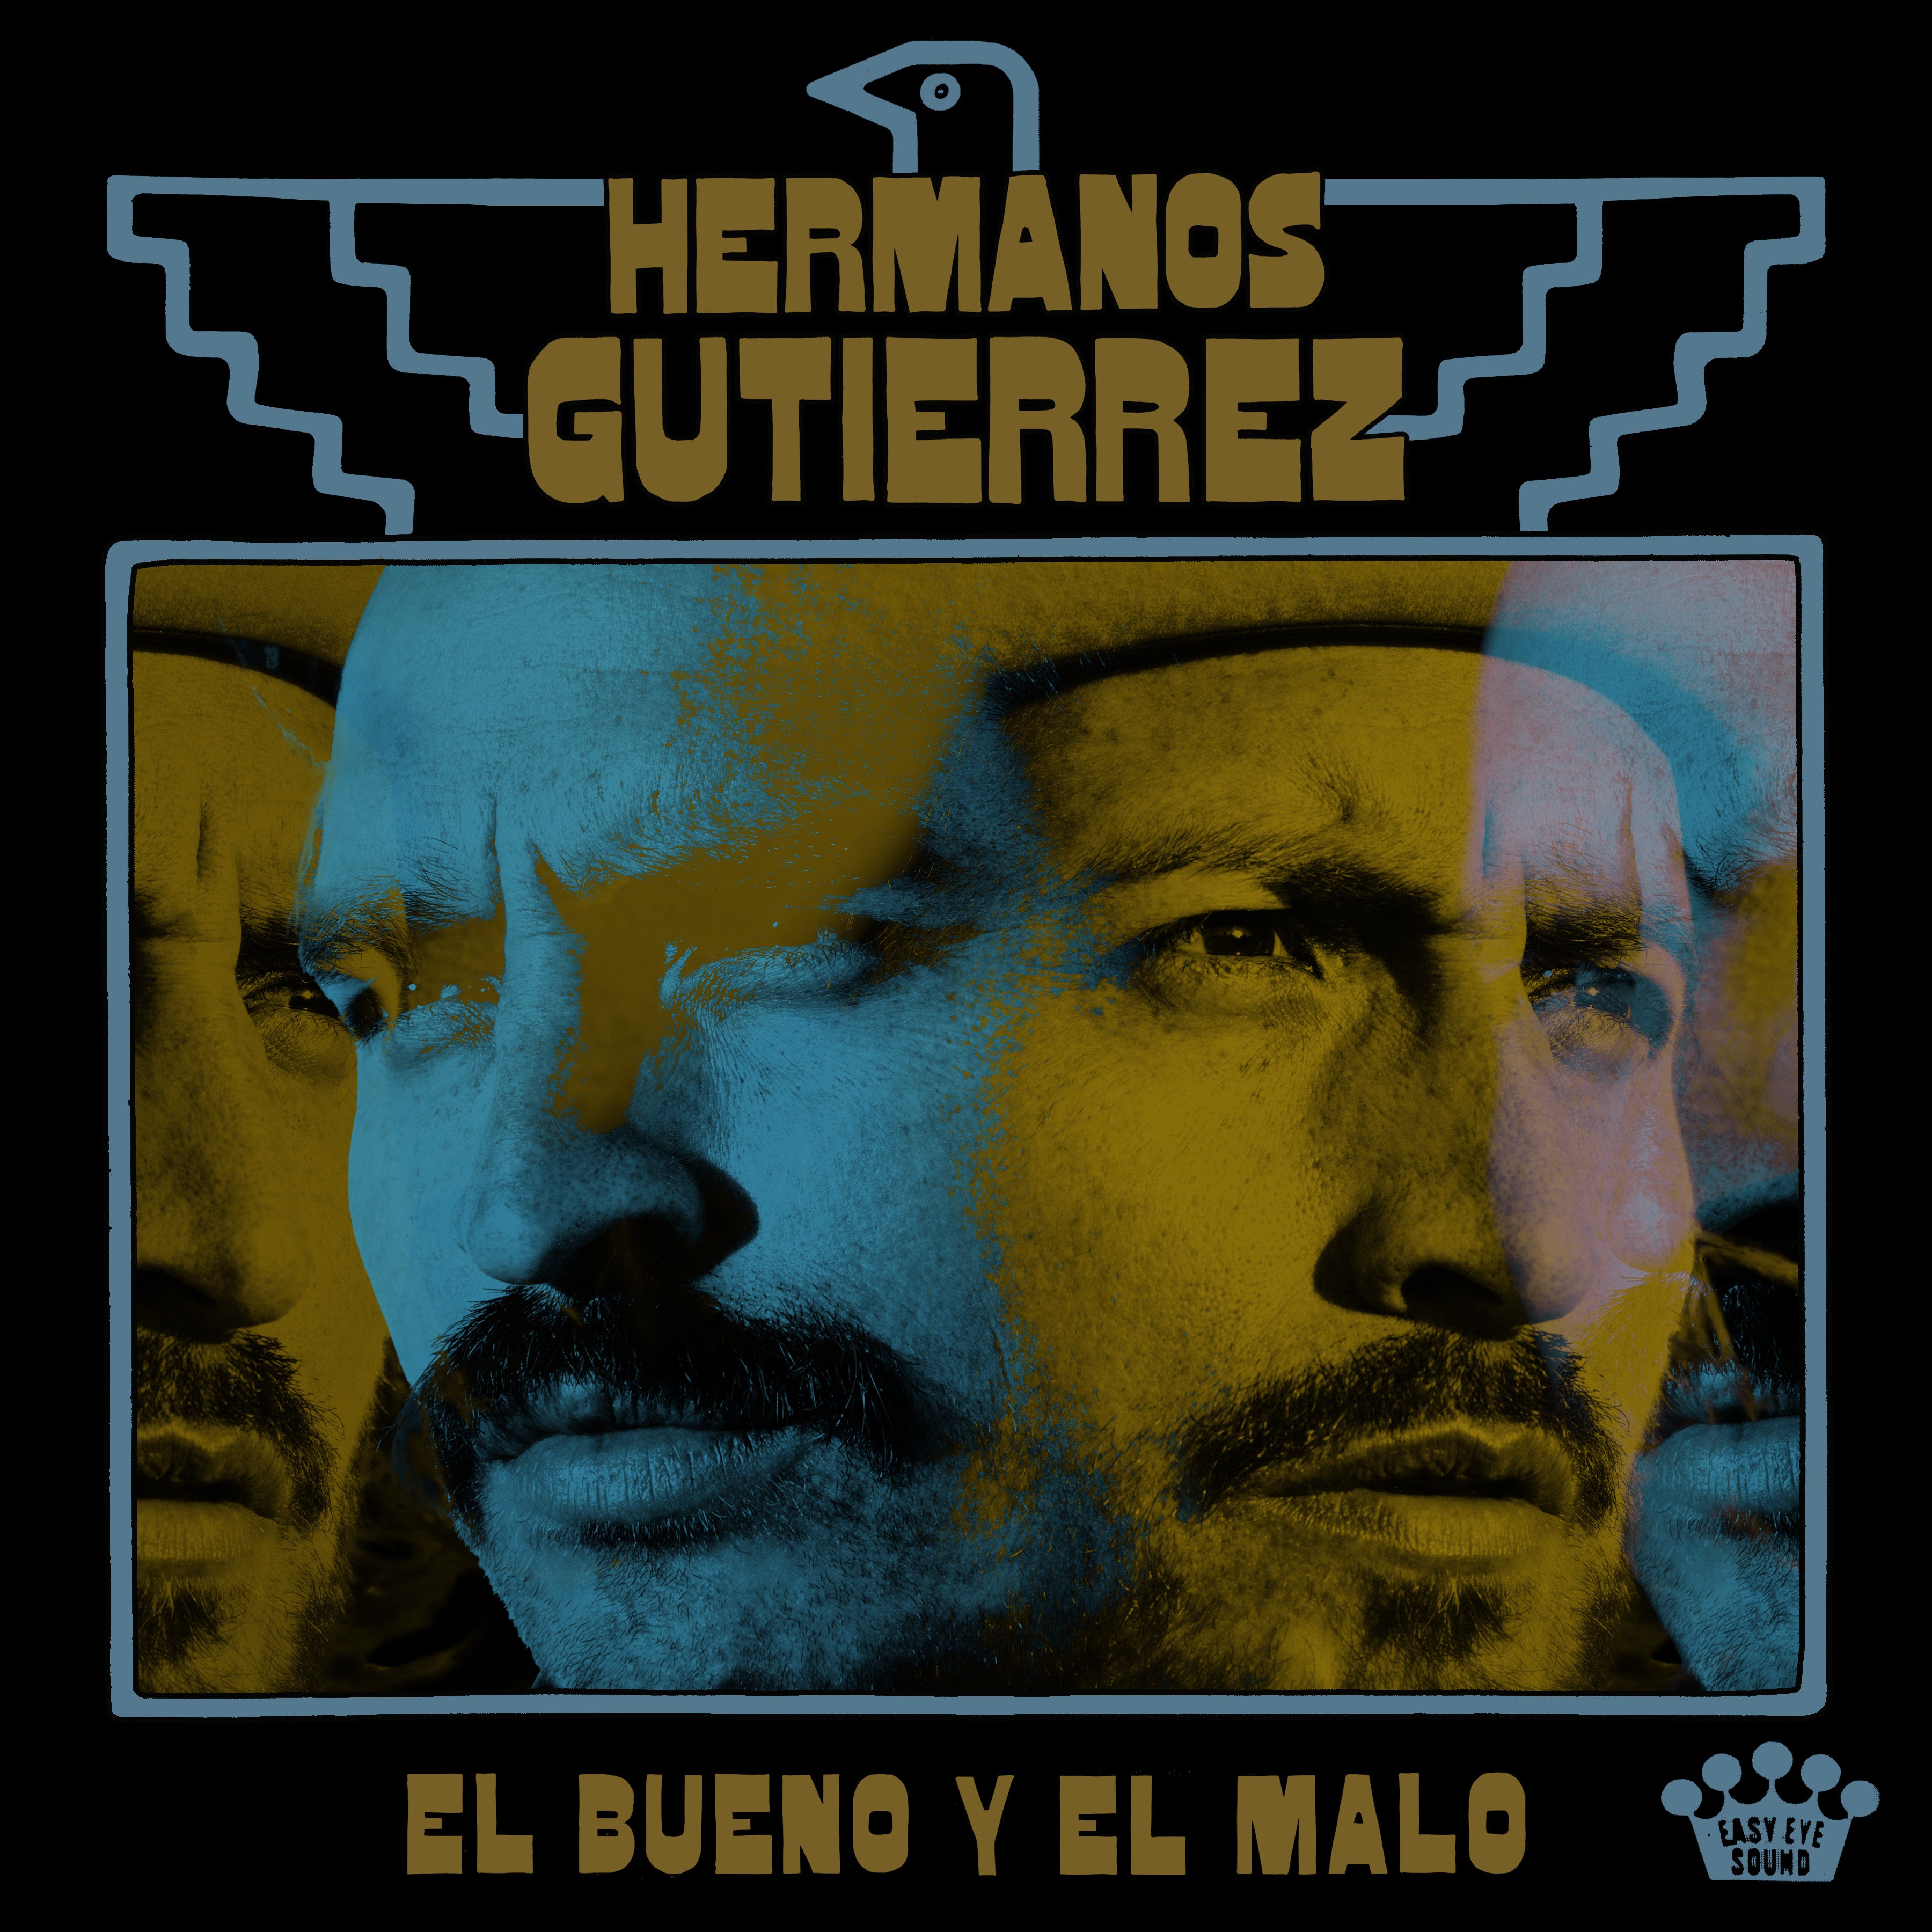 HERMANOS GUTIÉRREZ RELEASE THEIR EASY EYE SOUND DEBUT ALBUM, ‘EL BUENO Y EL MALO’